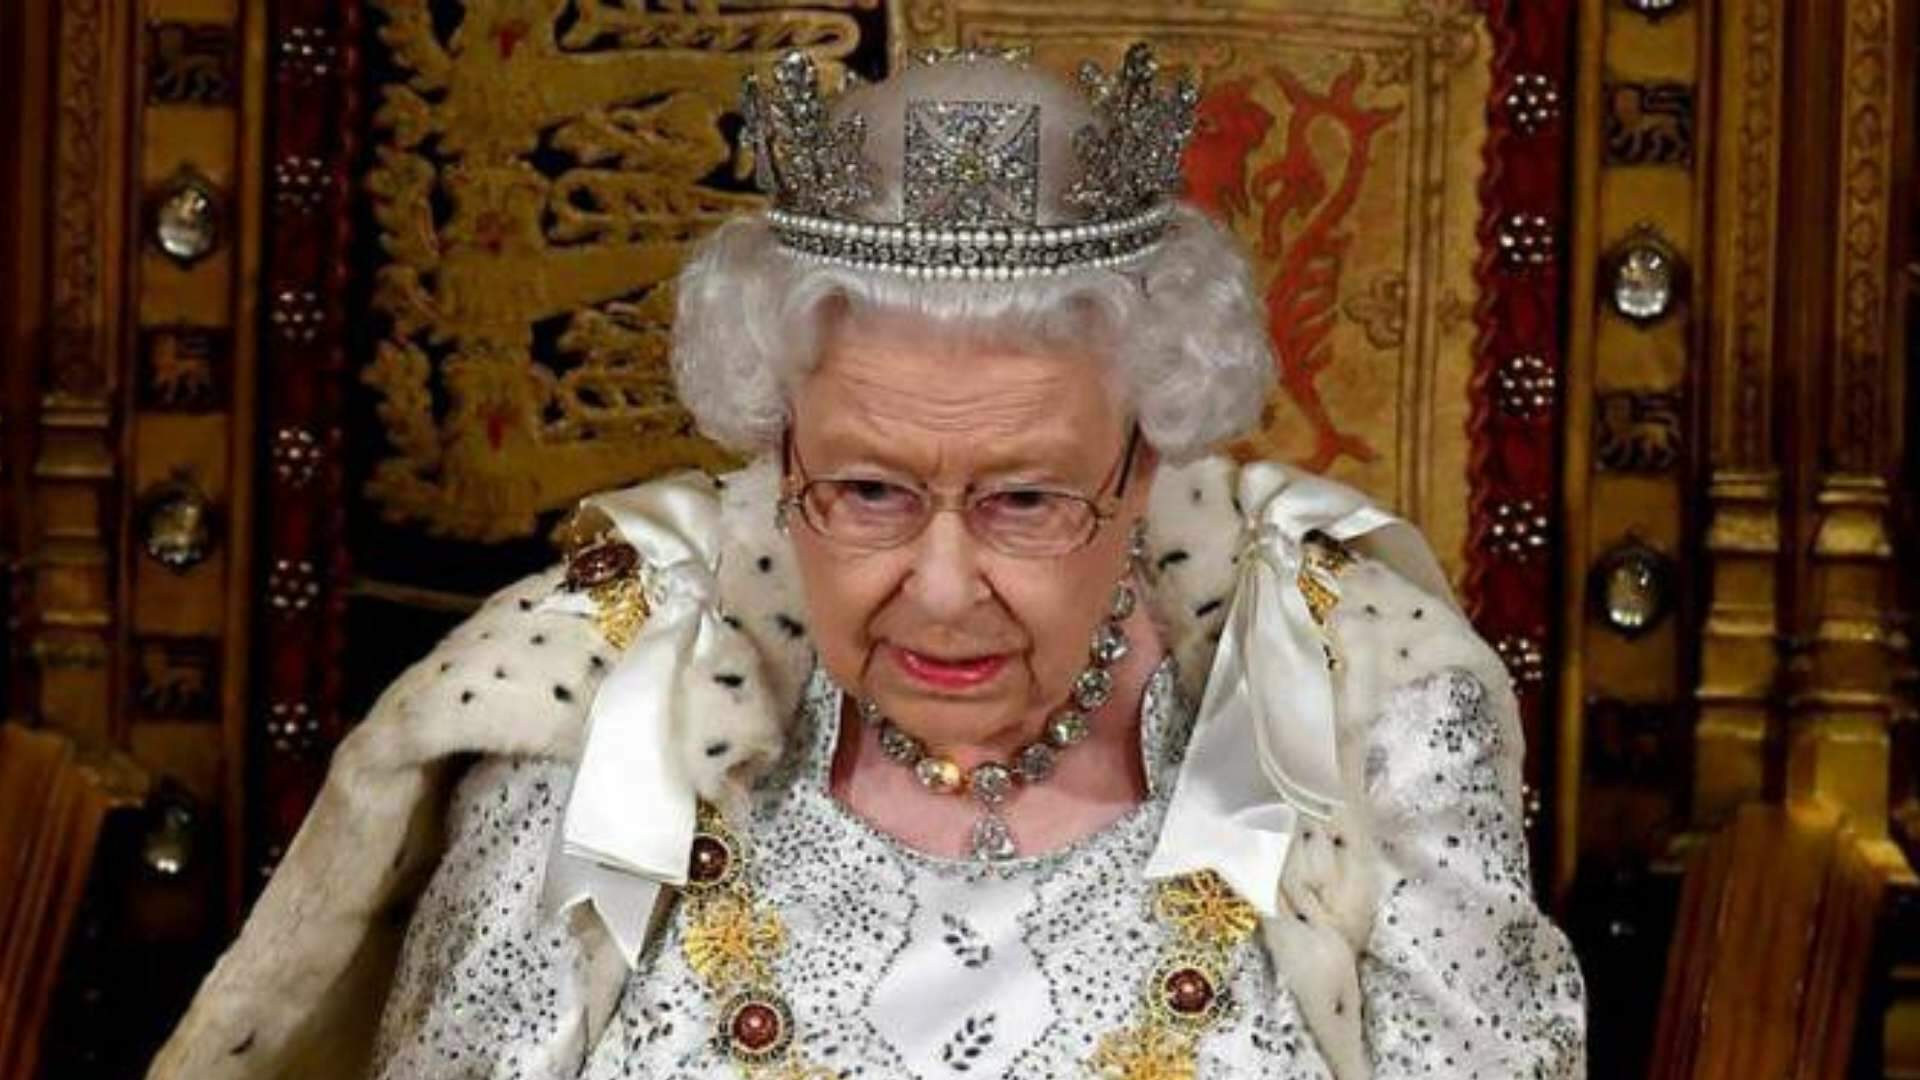 Rainha Elizabeth deixa carta duvidosa que só poderá ser lida em 2085: “Minha mensagem para eles” - Metropolitana FM